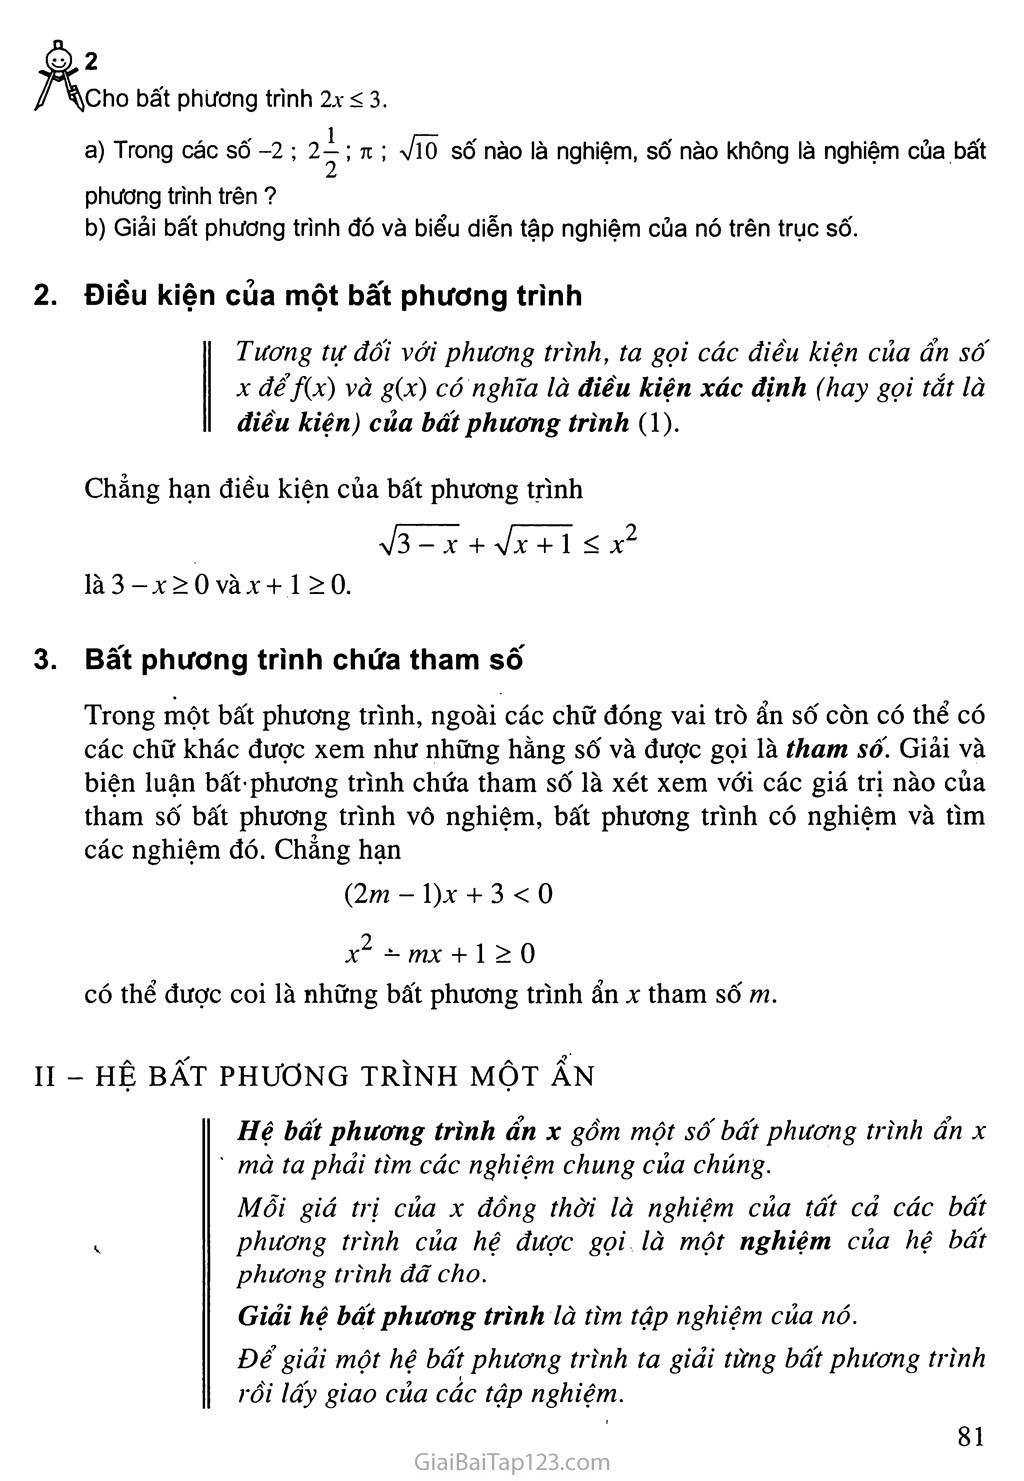 Bài 2. Bất phương trình và hệ bất phương trình một ẩn trang 2